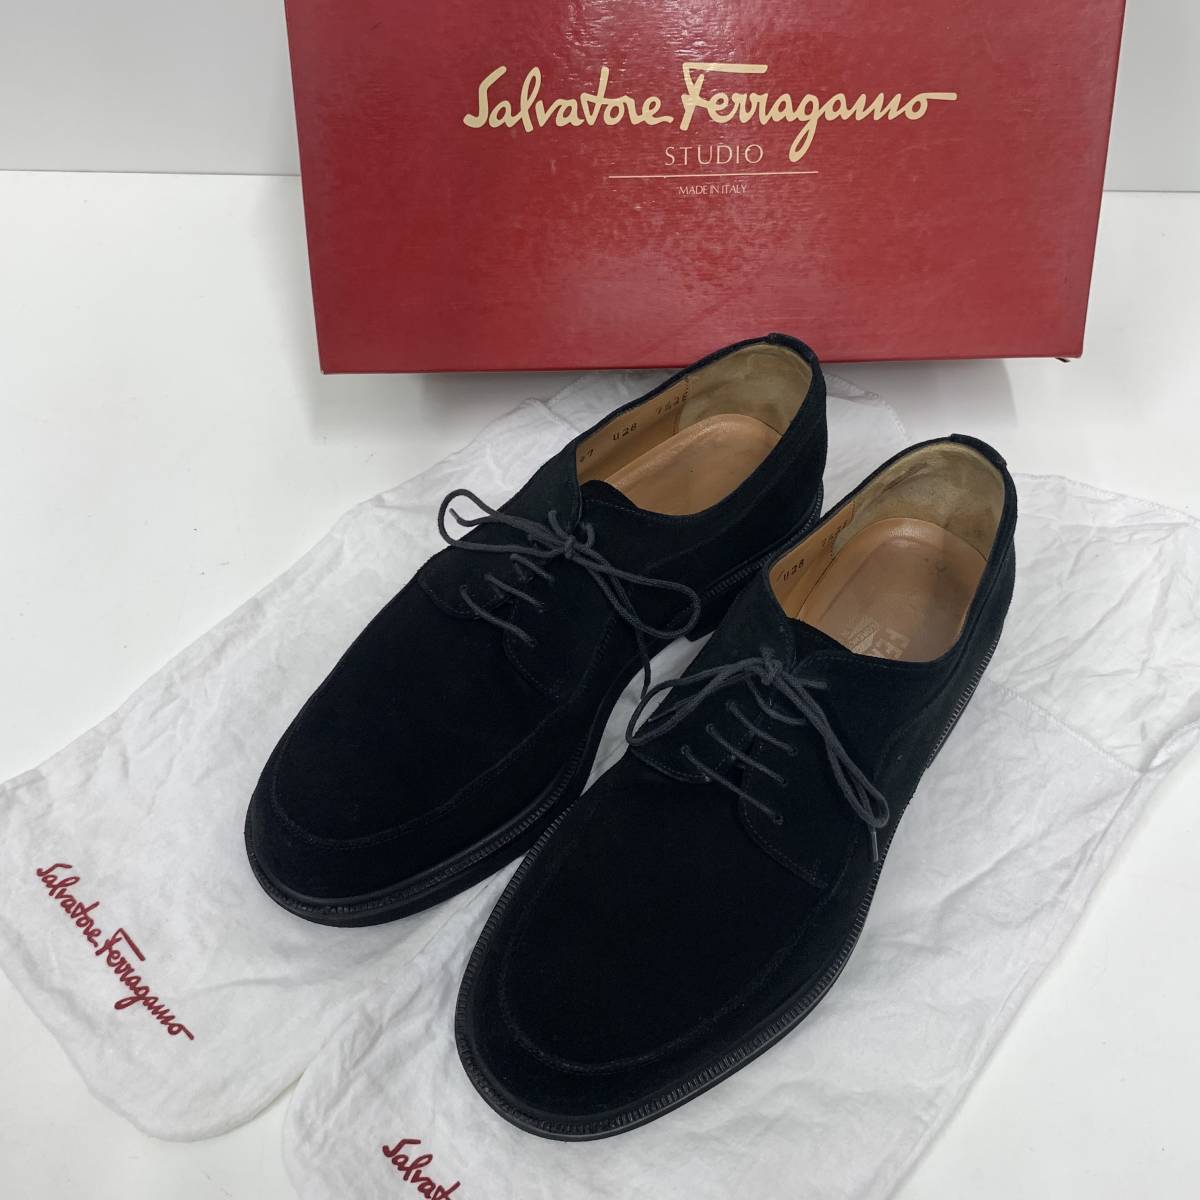 1305 Salvatore Ferragamo フェラガモ 7 1/2 EE 約26cm スエード Uチップ 革靴 本革 ビジネスシューズ ITALY製 黒 ブラック